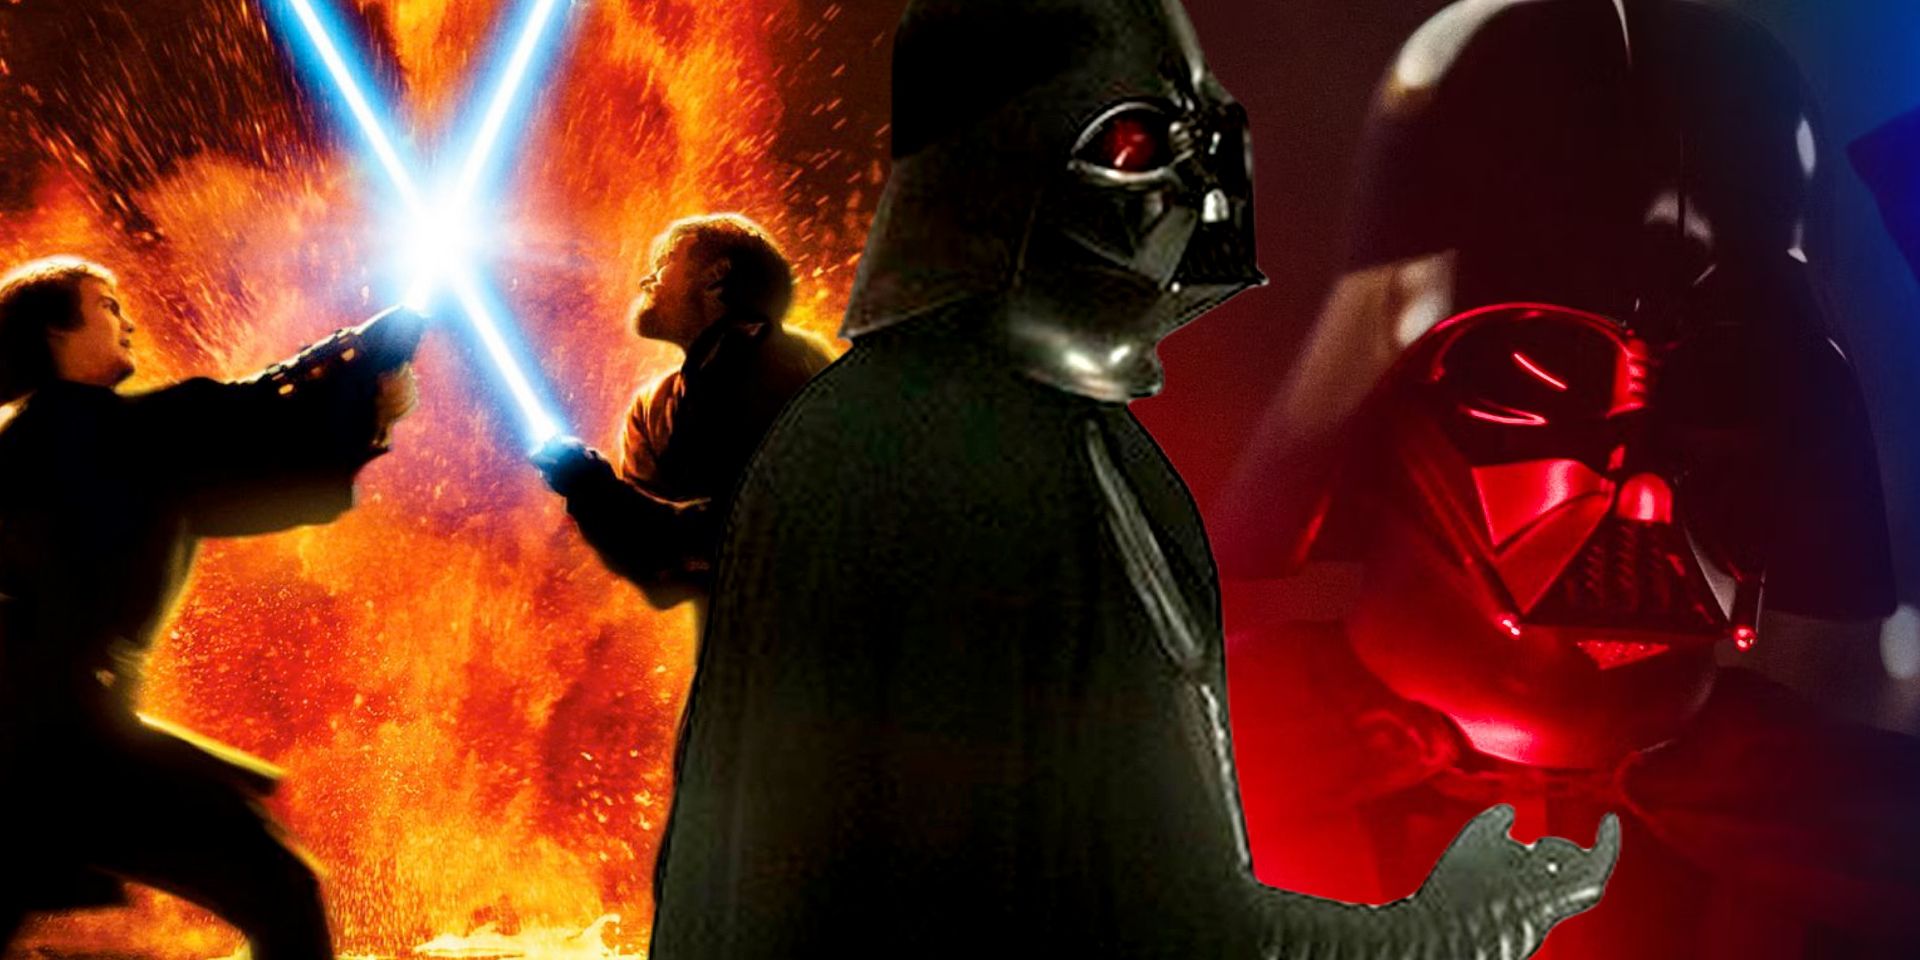 Darth Vader Battle of Heroes Obi Wan Kenobi